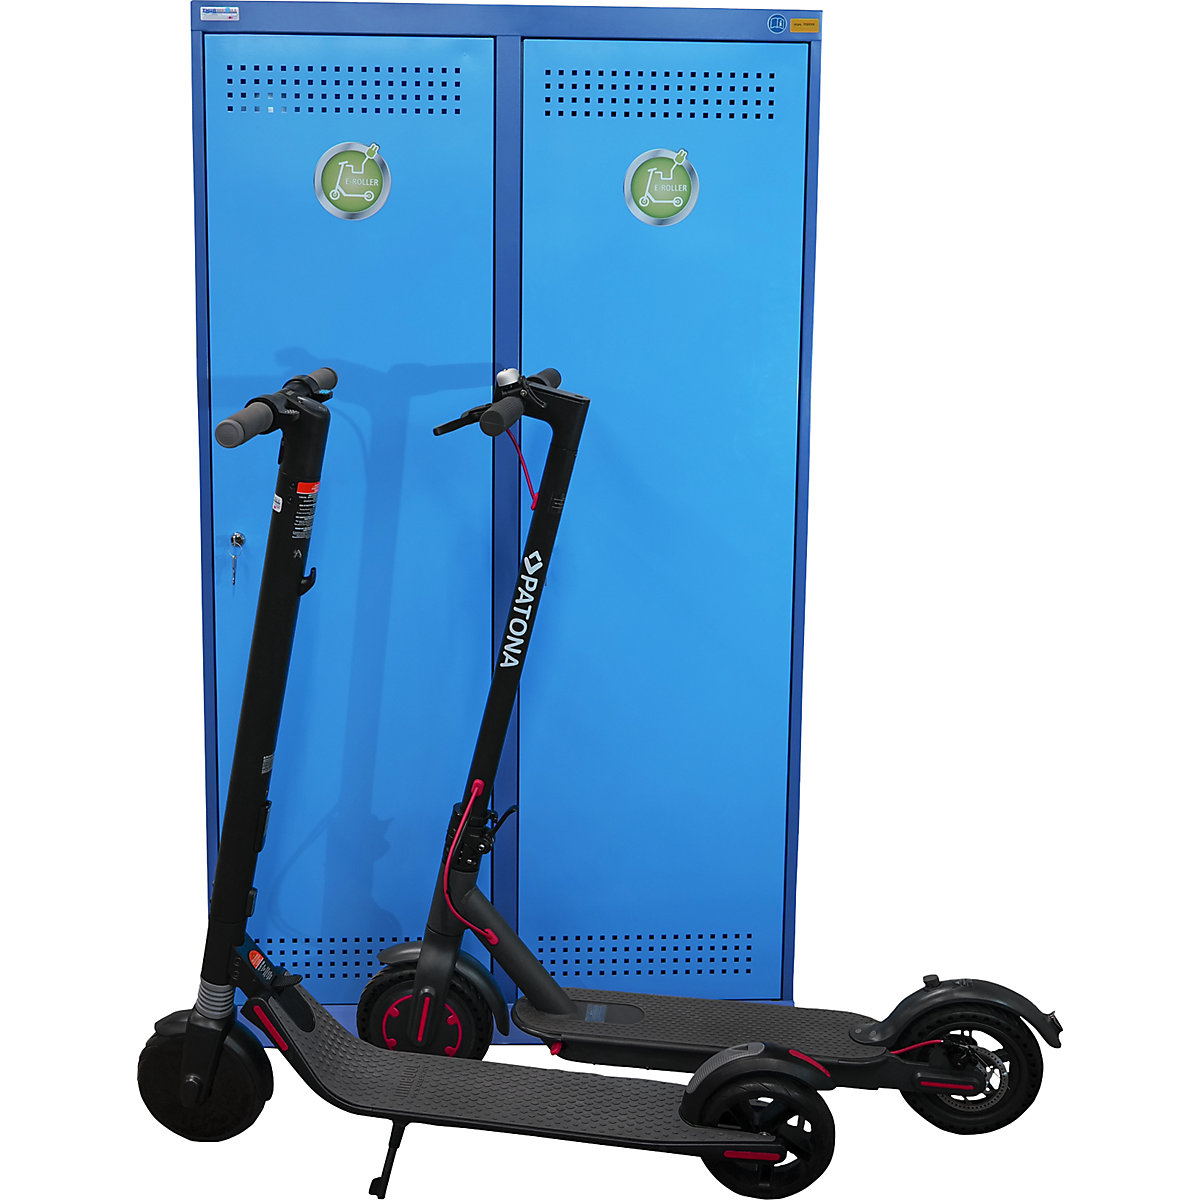 Armario cargador para patinete eléctrico: 2 compartimentos con 2 enchufes  cada uno